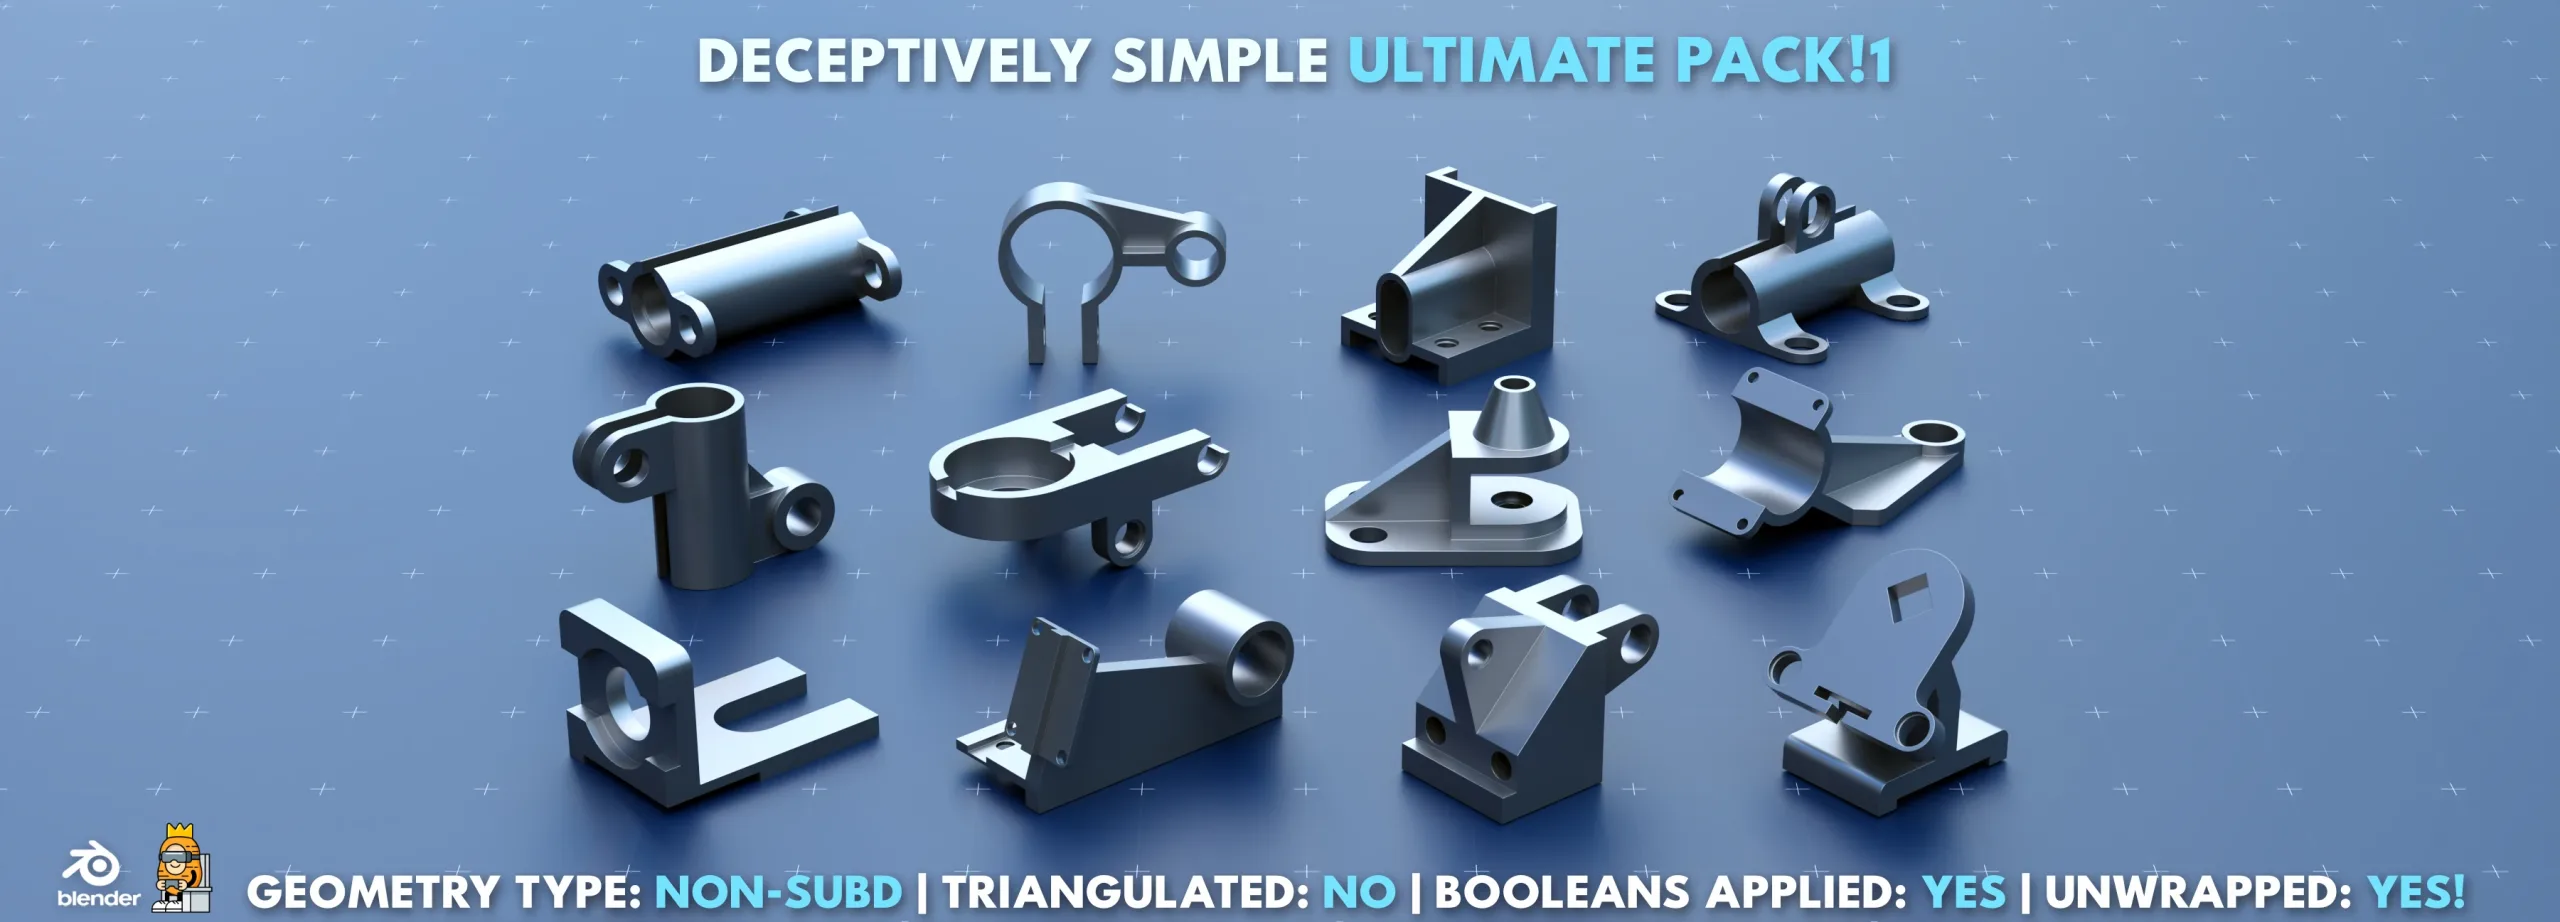 Simple Kitbash Bundle #Ultimate!1 //210 Models//